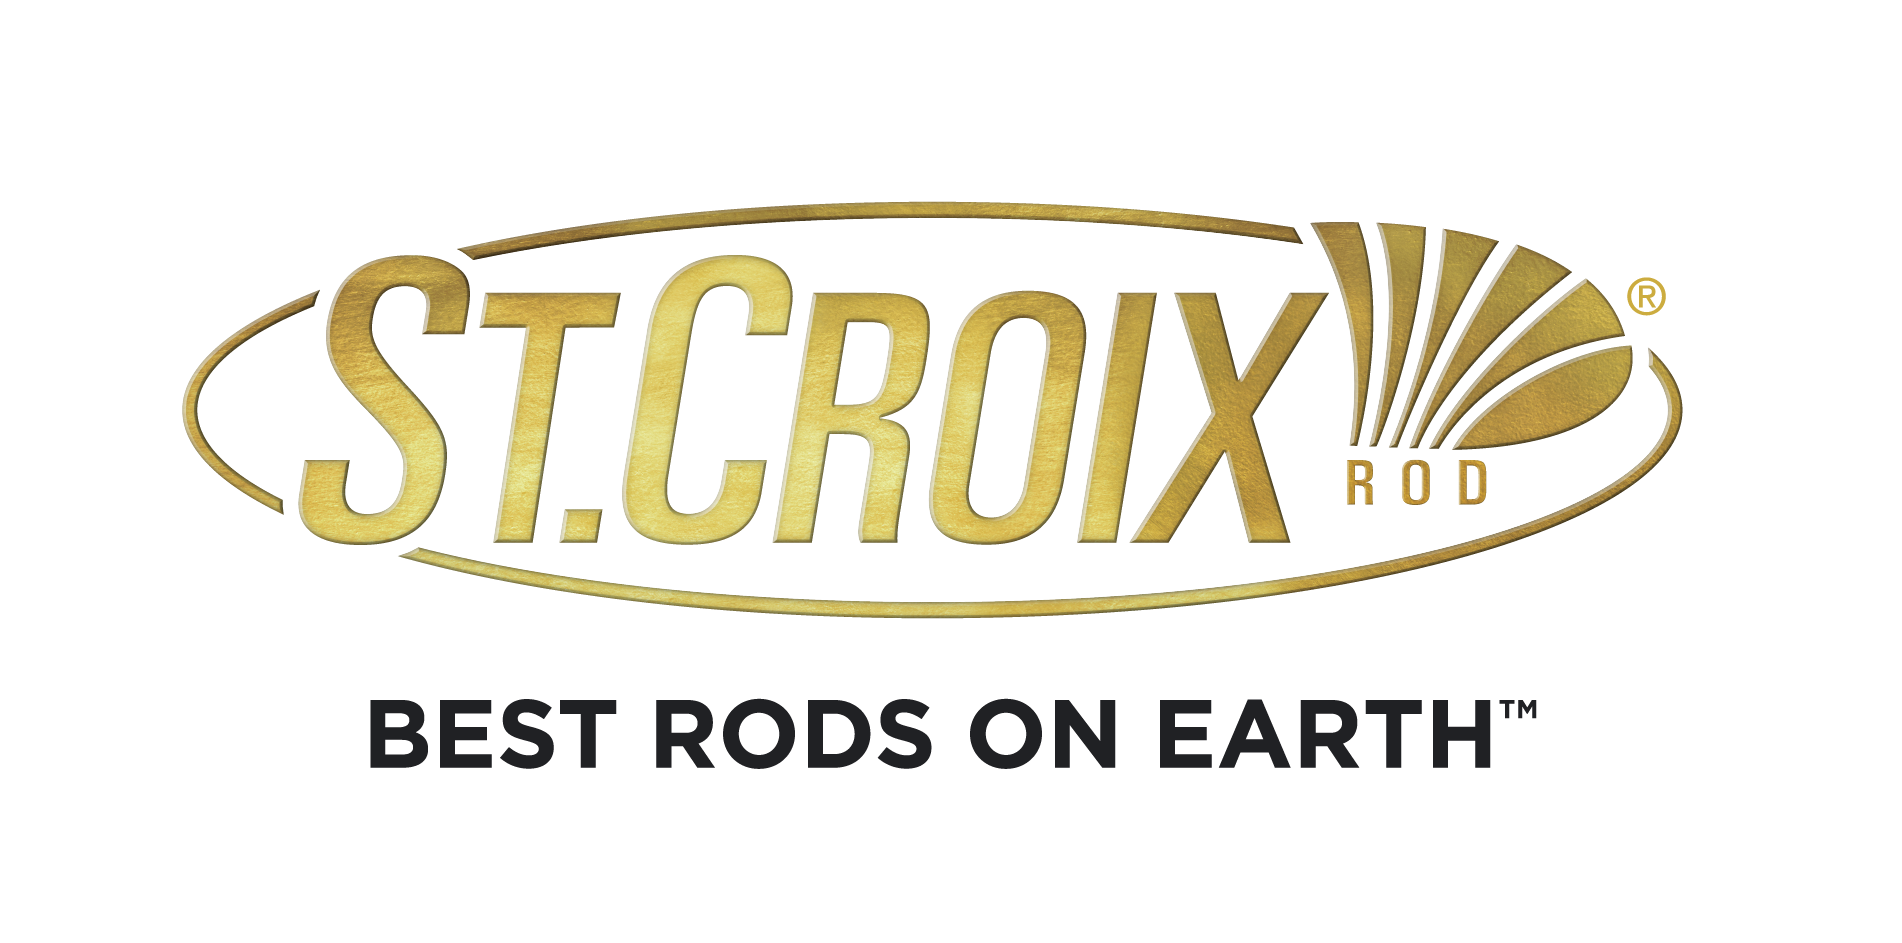 St. Croix Rods